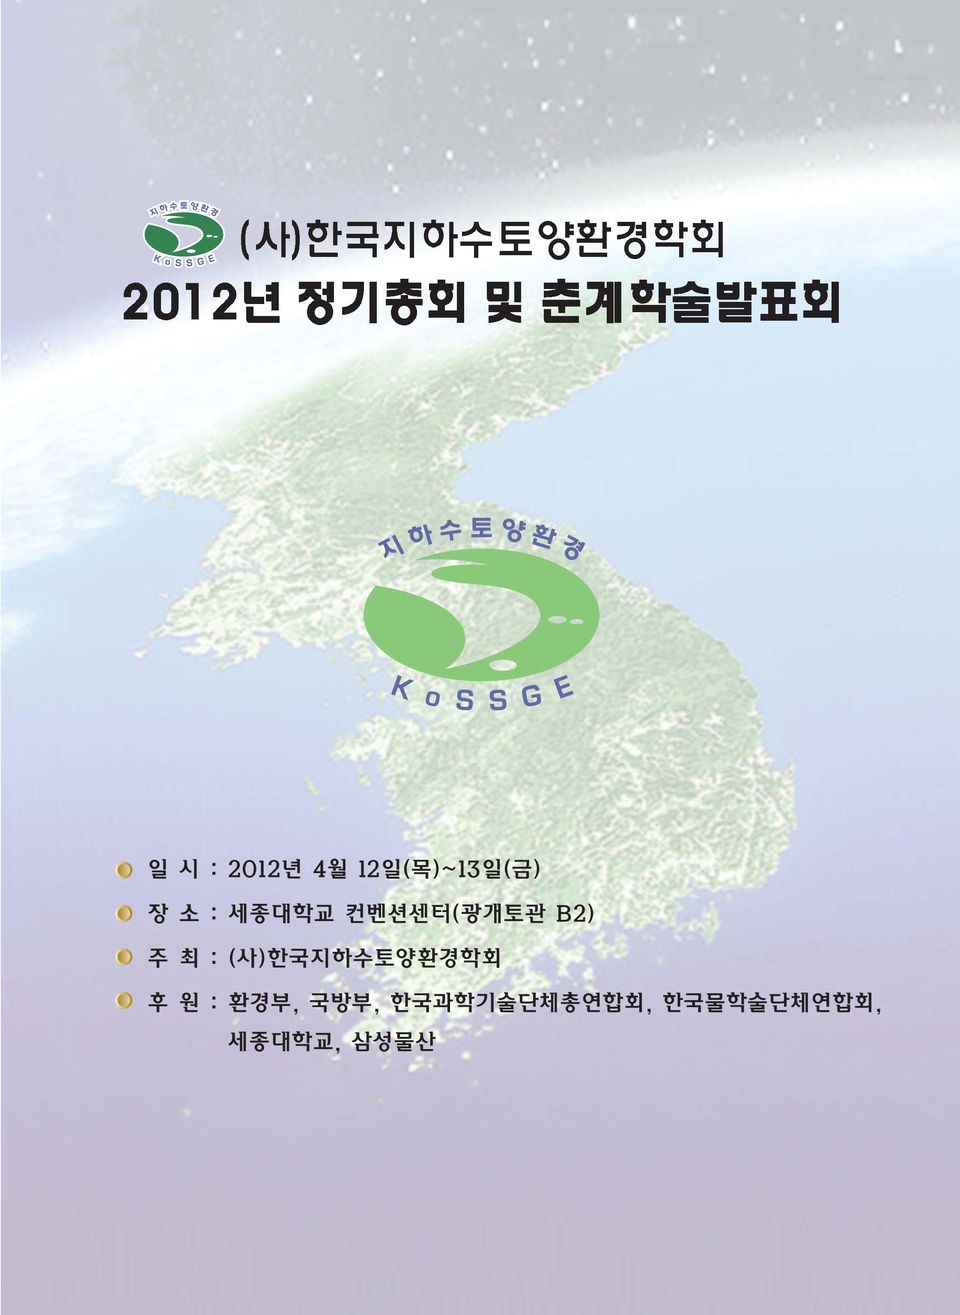 (사)한국지하수토양환경학회 후 원 : 환경부, 국방부,